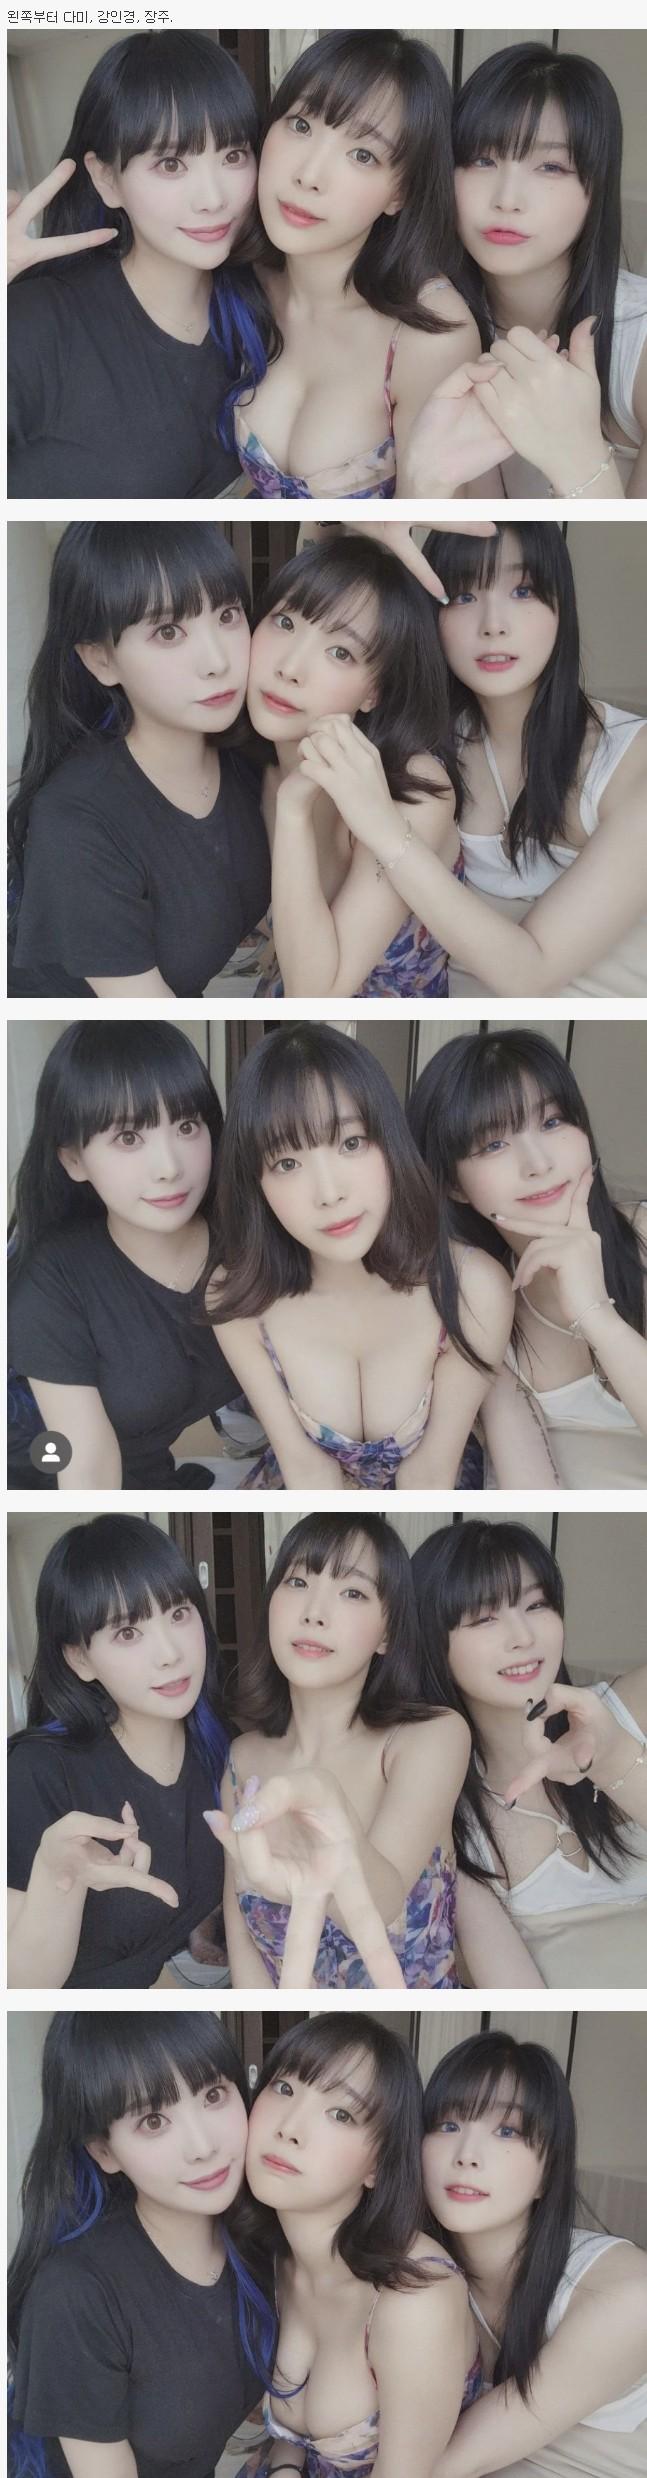 ●韓国グラビアを率いる3人組の女性カメラ